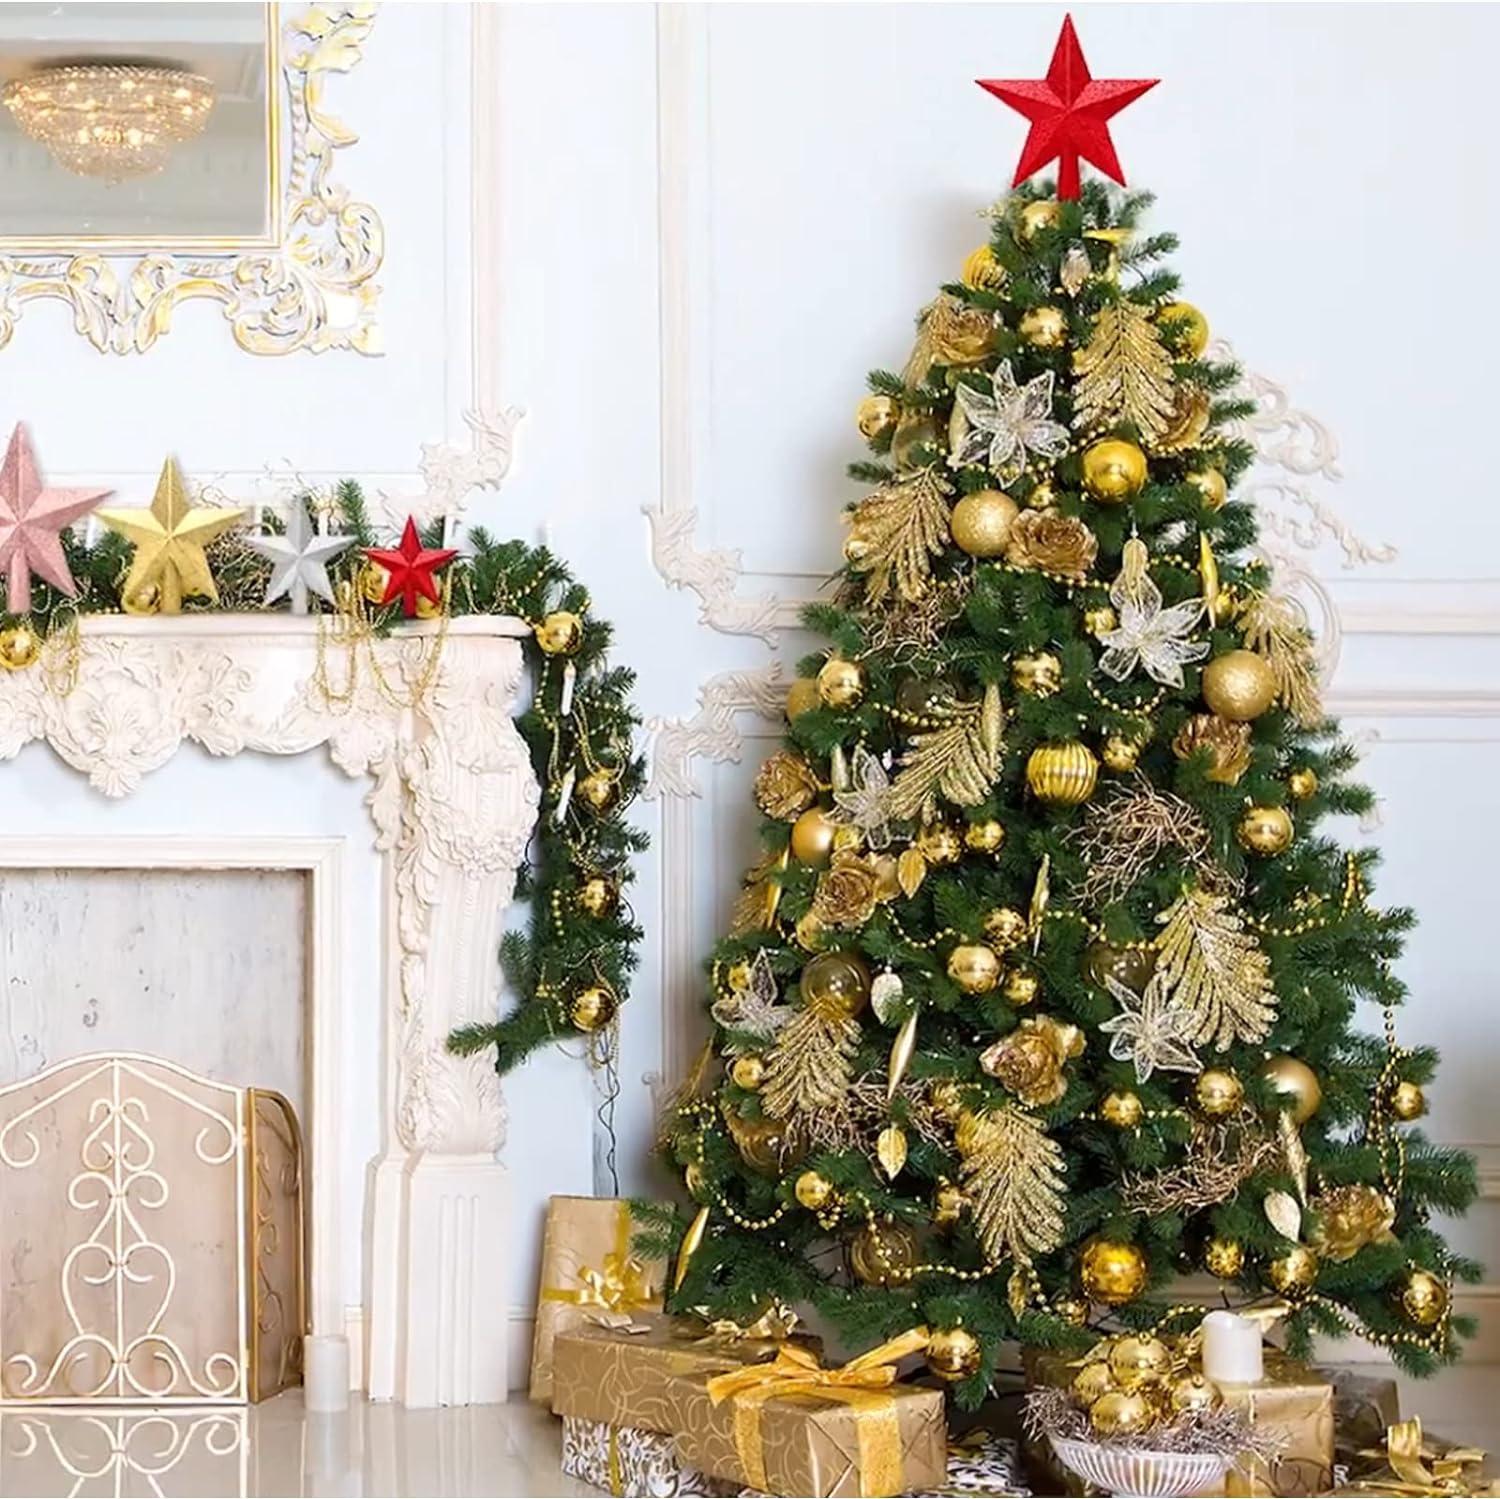 Đồ trang trí cho cây thông Noel, ngôi sao cho Summis Cây Giáng sinh, cây thông Noel hình ngôi sao cho bất kỳ trang trí nào (màu đỏ)